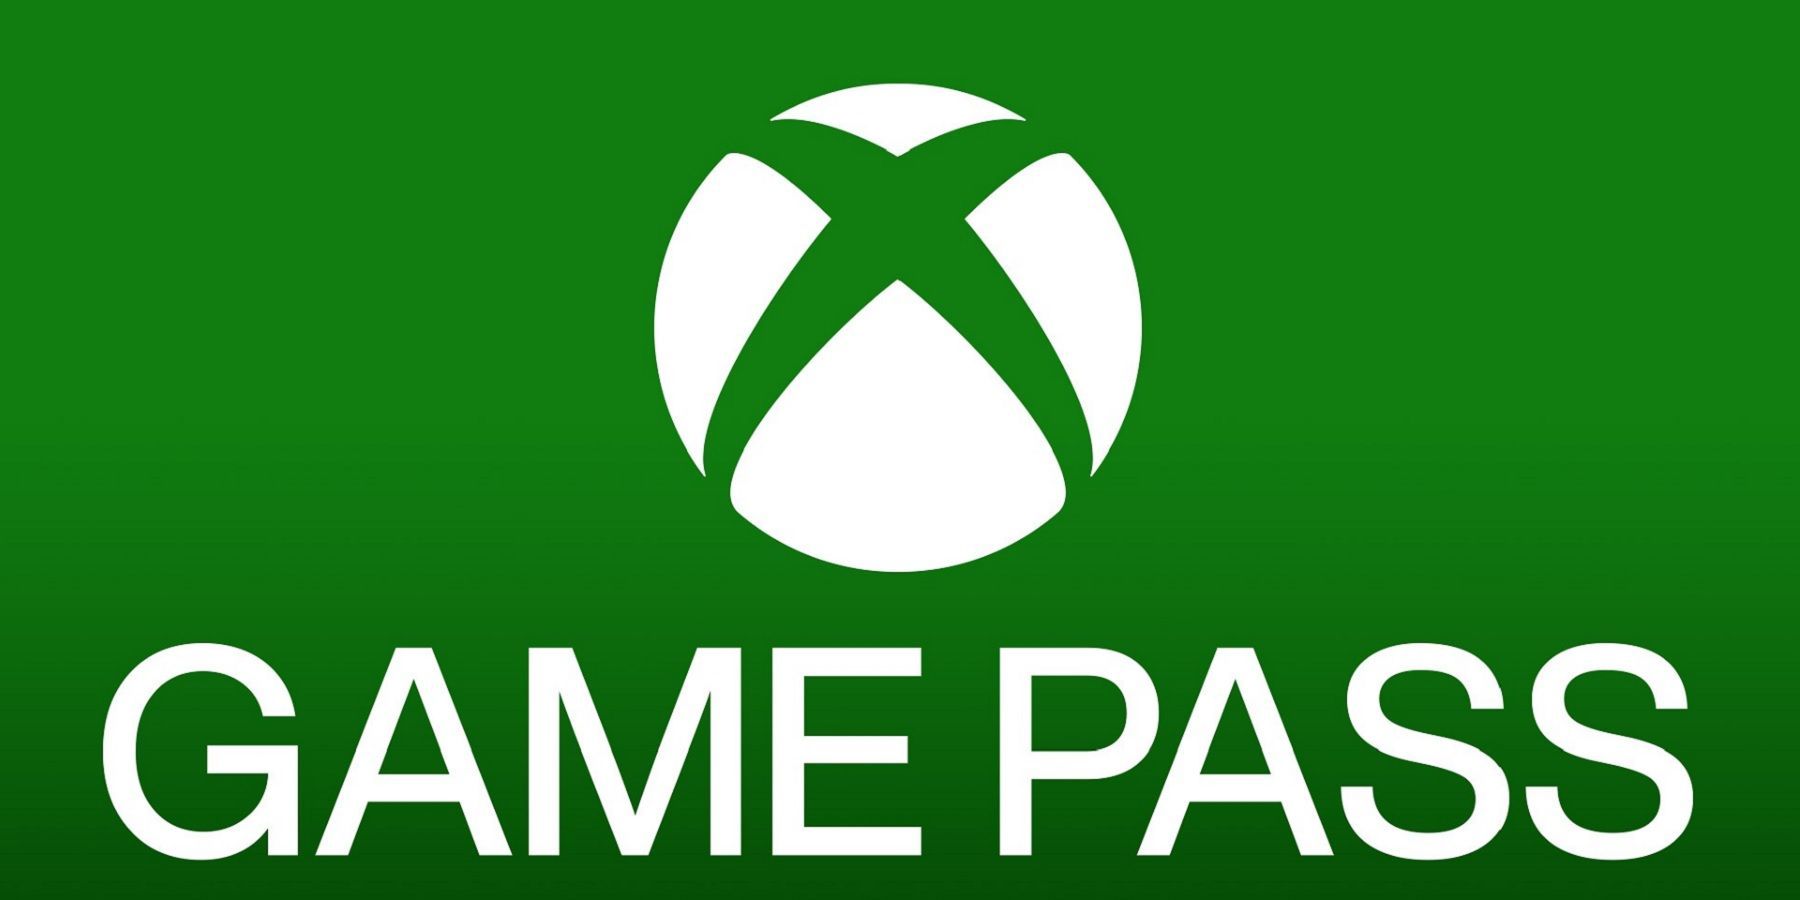 xbox game pass logo white text green background